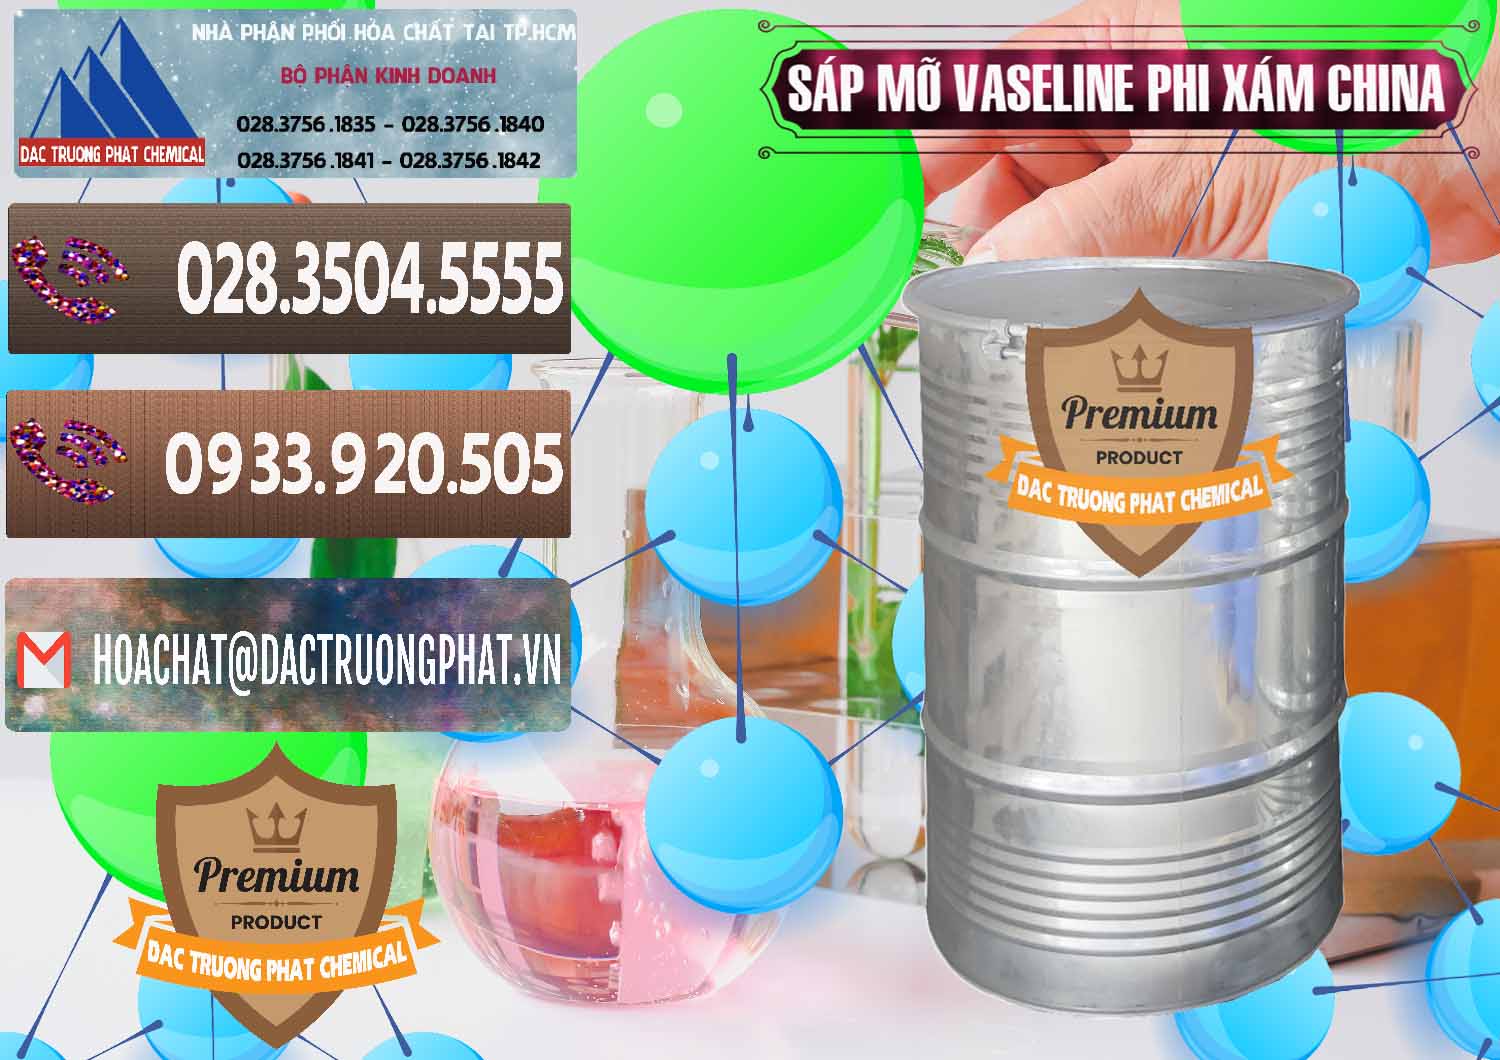 Công ty chuyên bán và cung cấp Sáp Mỡ Vaseline Phi Xám Trung Quốc China - 0291 - Chuyên phân phối - kinh doanh hóa chất tại TP.HCM - hoachatviet.net